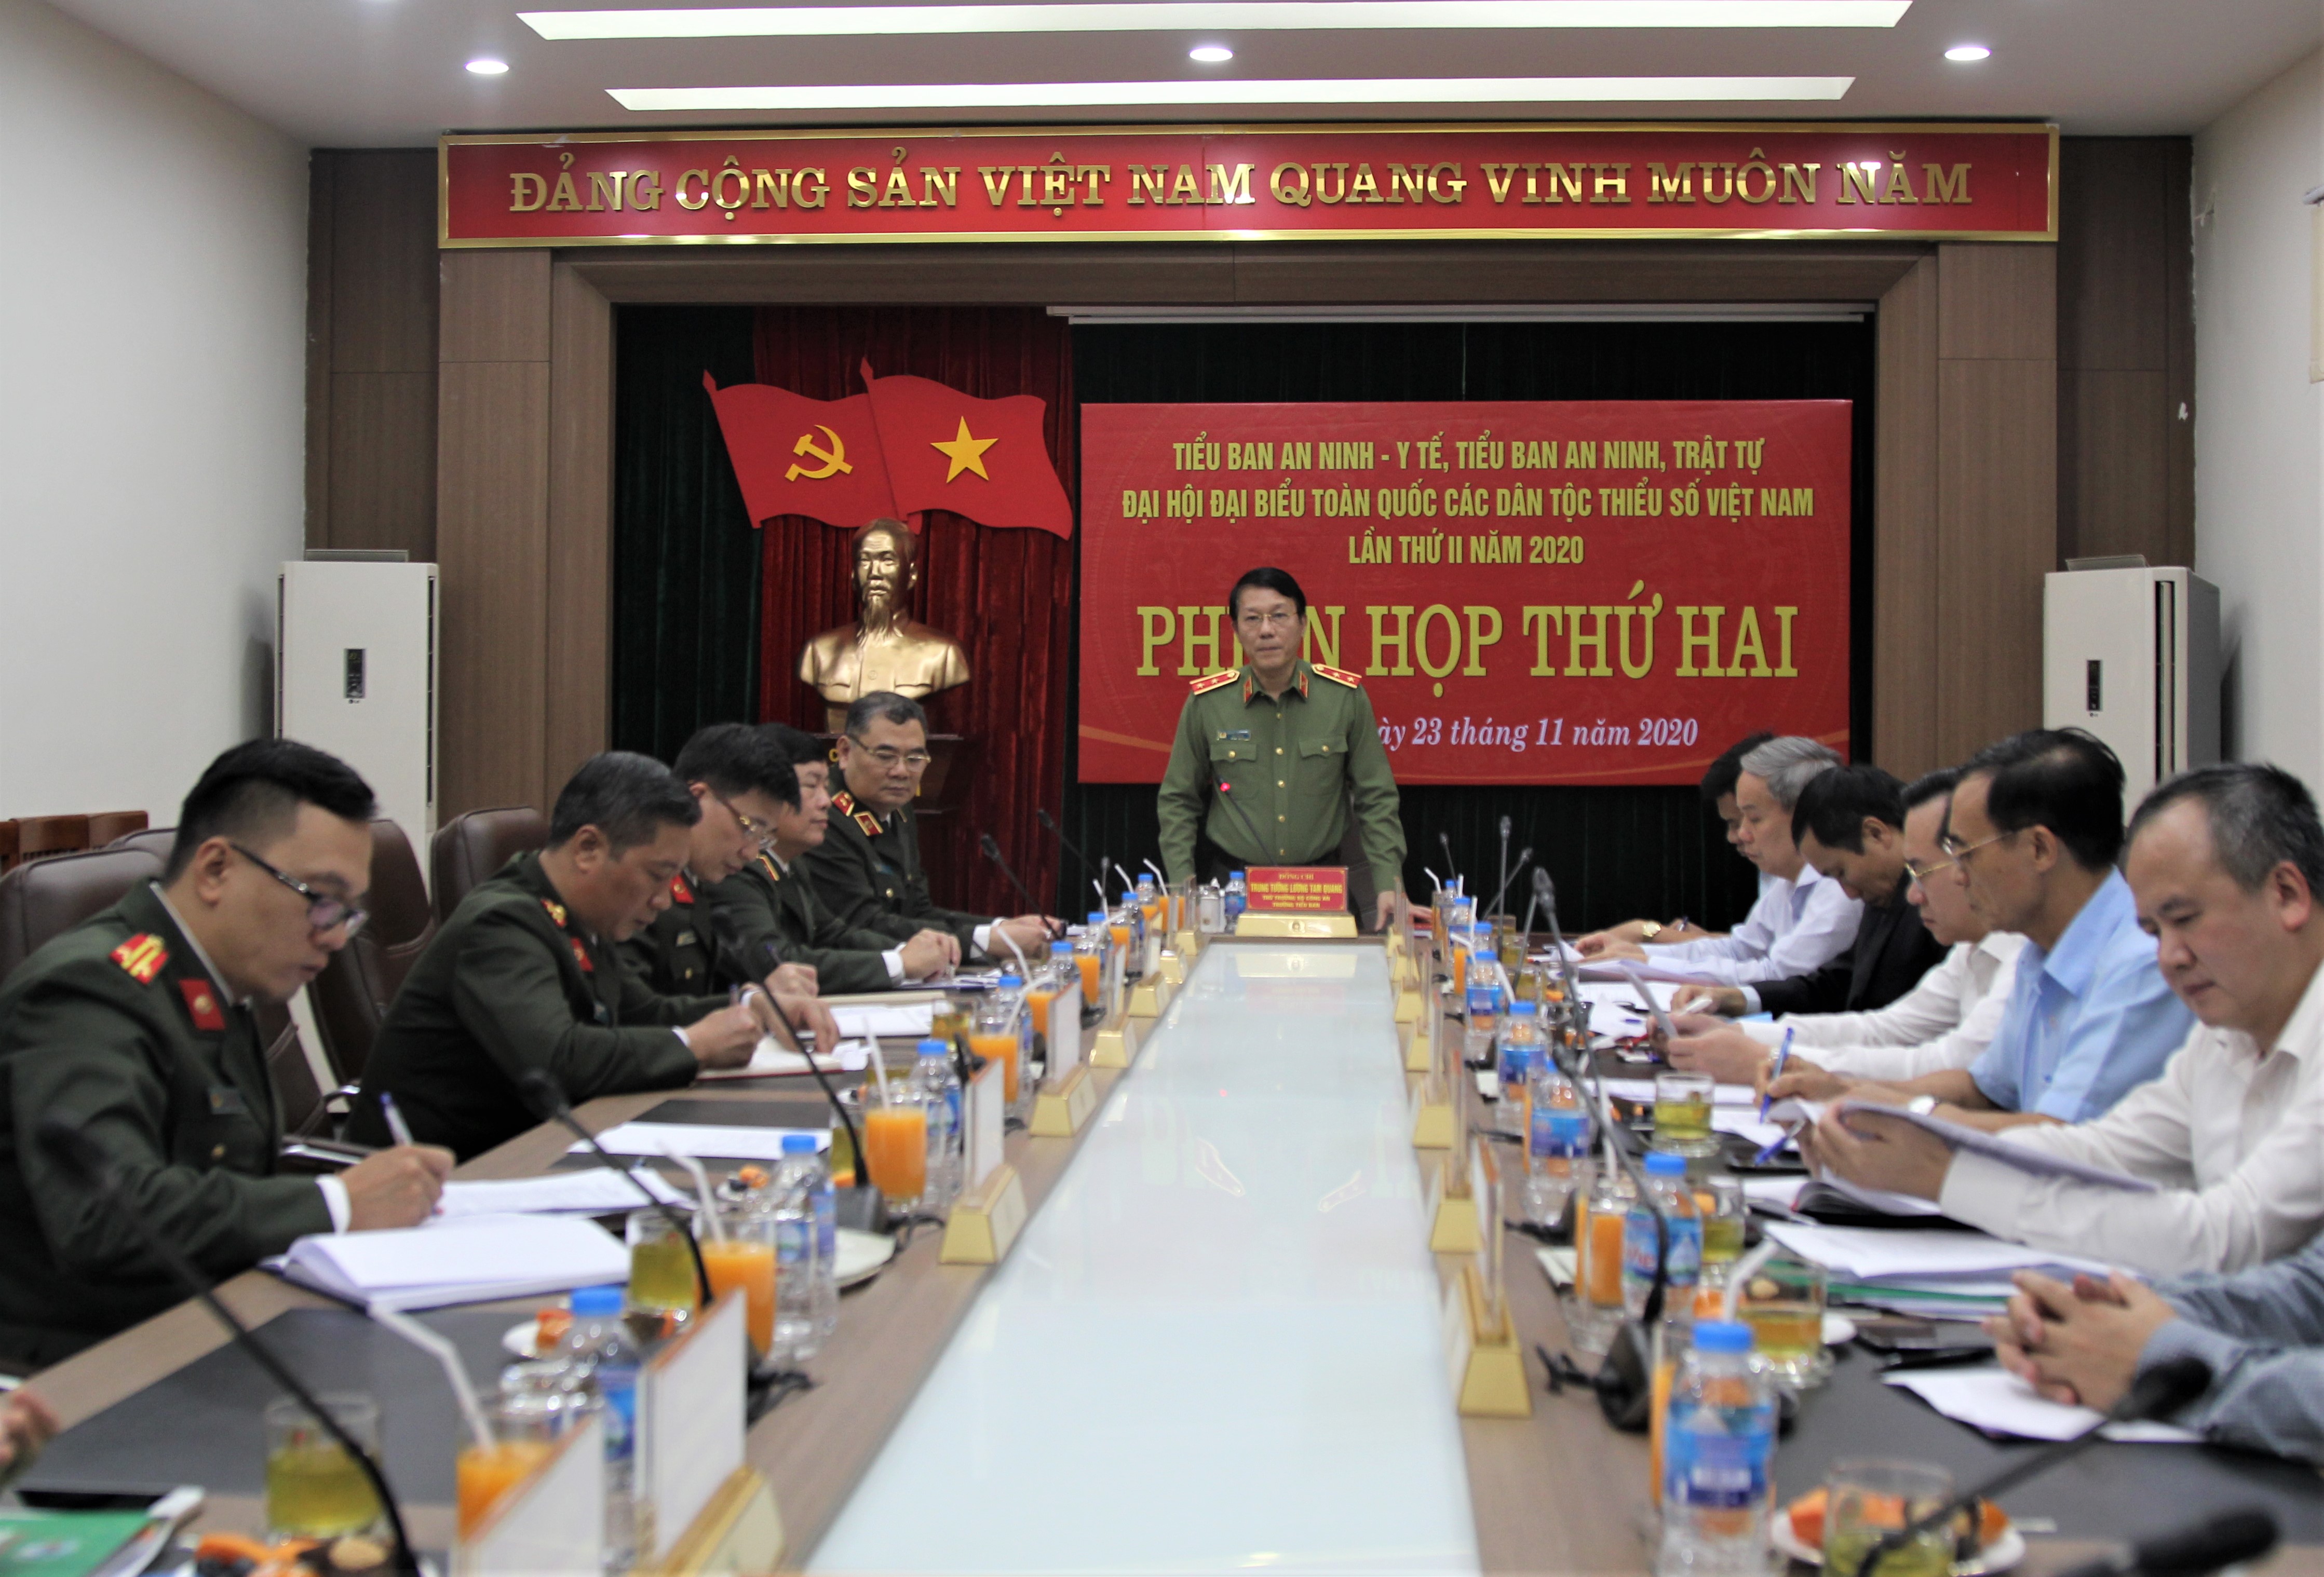 Trung tướng Lương Tam Quang, Thứ trưởng Bộ Công an, Trưởng Tiểu ban An ninh - Y tế phát biểu kết luận tại phiên họp